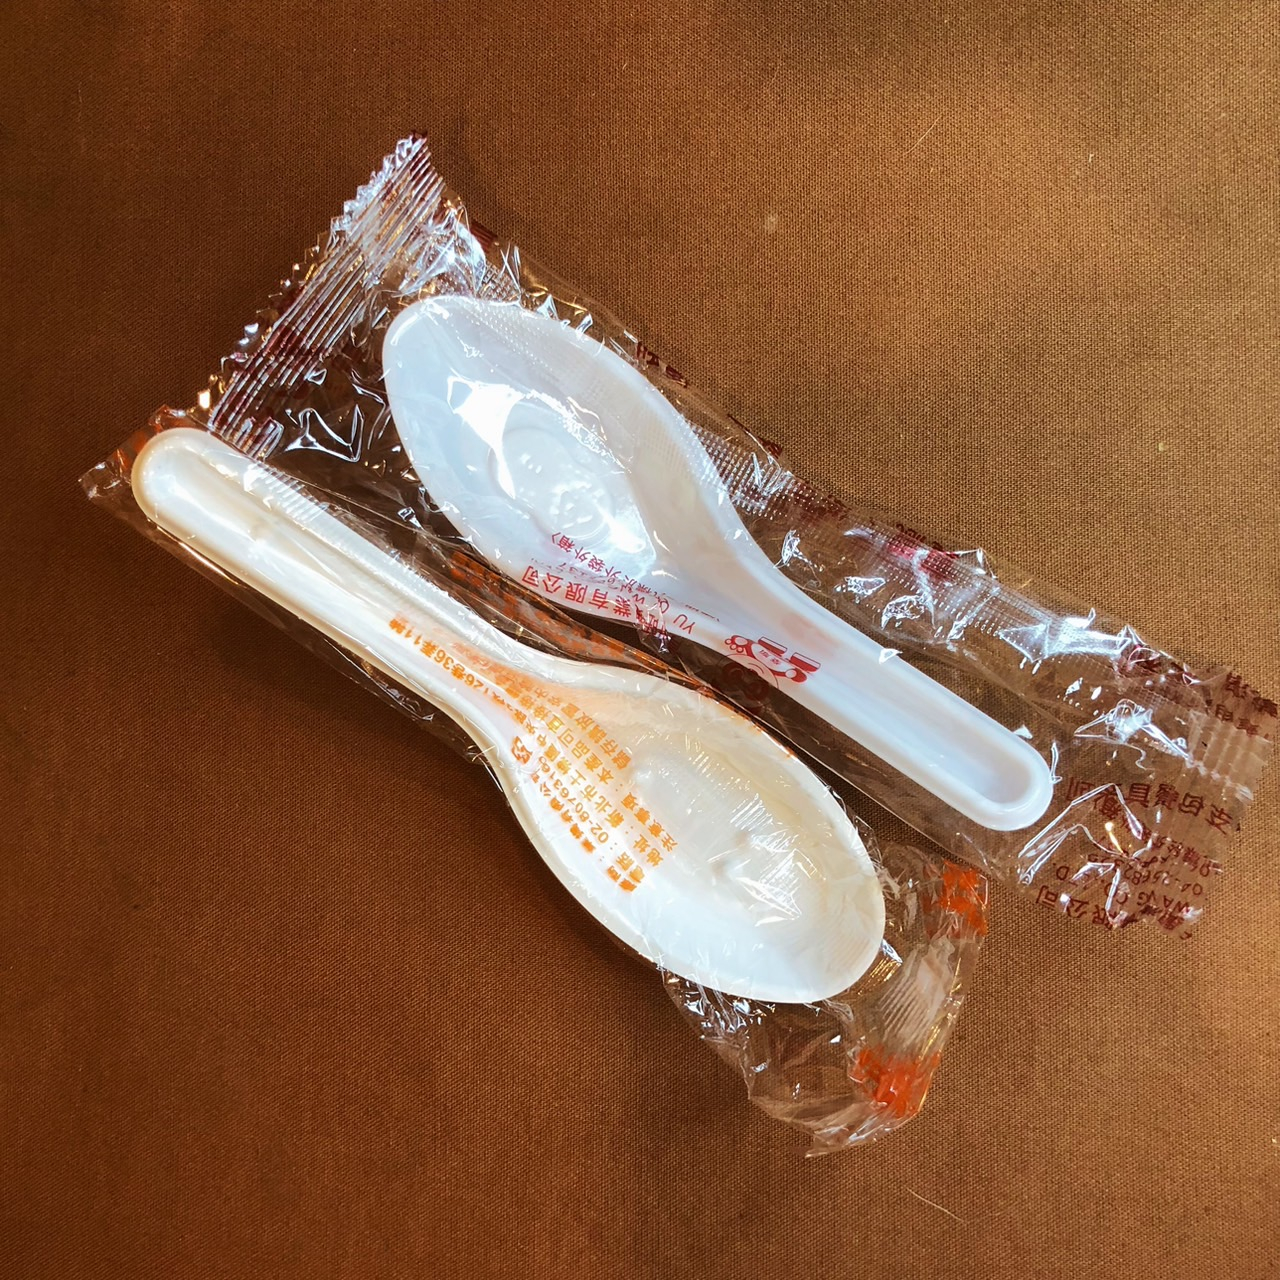 (單只) 獨立包裝 免洗湯匙 塑膠湯匙 調羹 勺子 湯瓢 一次性使用湯匙 外出湯匙 免洗餐具 單包裝免洗湯匙 單包裝湯匙